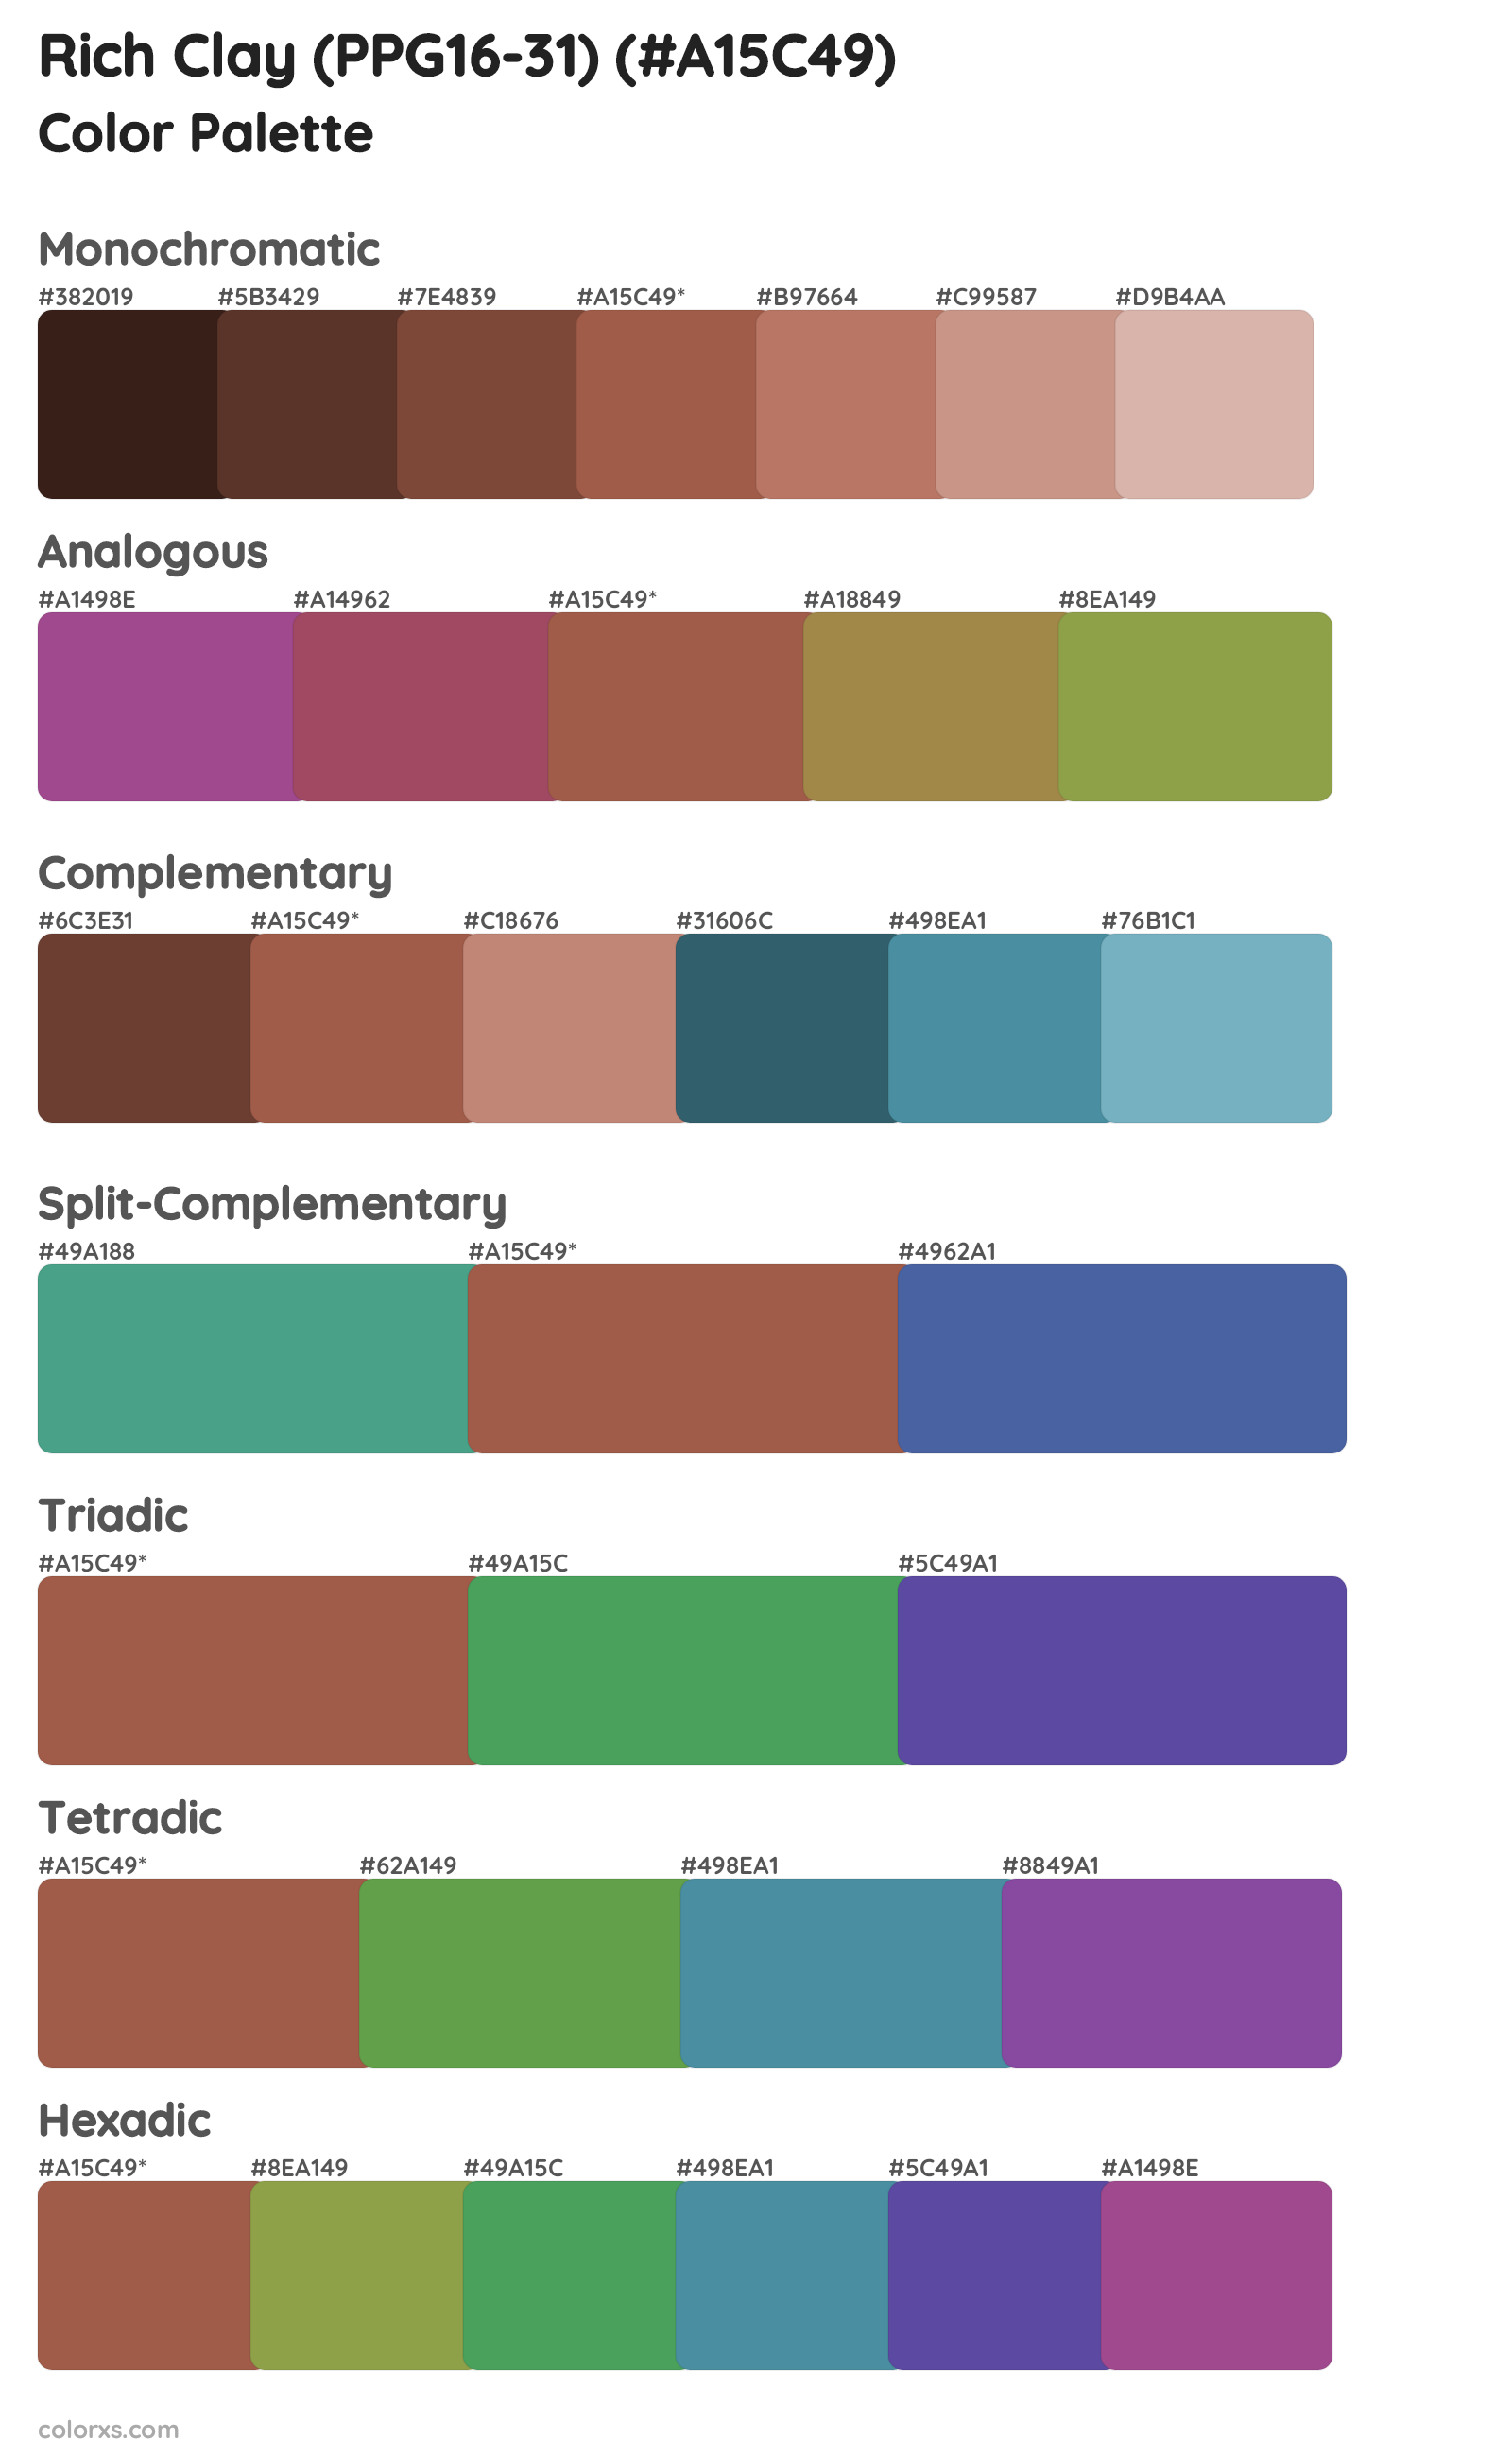 Rich Clay (PPG16-31) Color Scheme Palettes